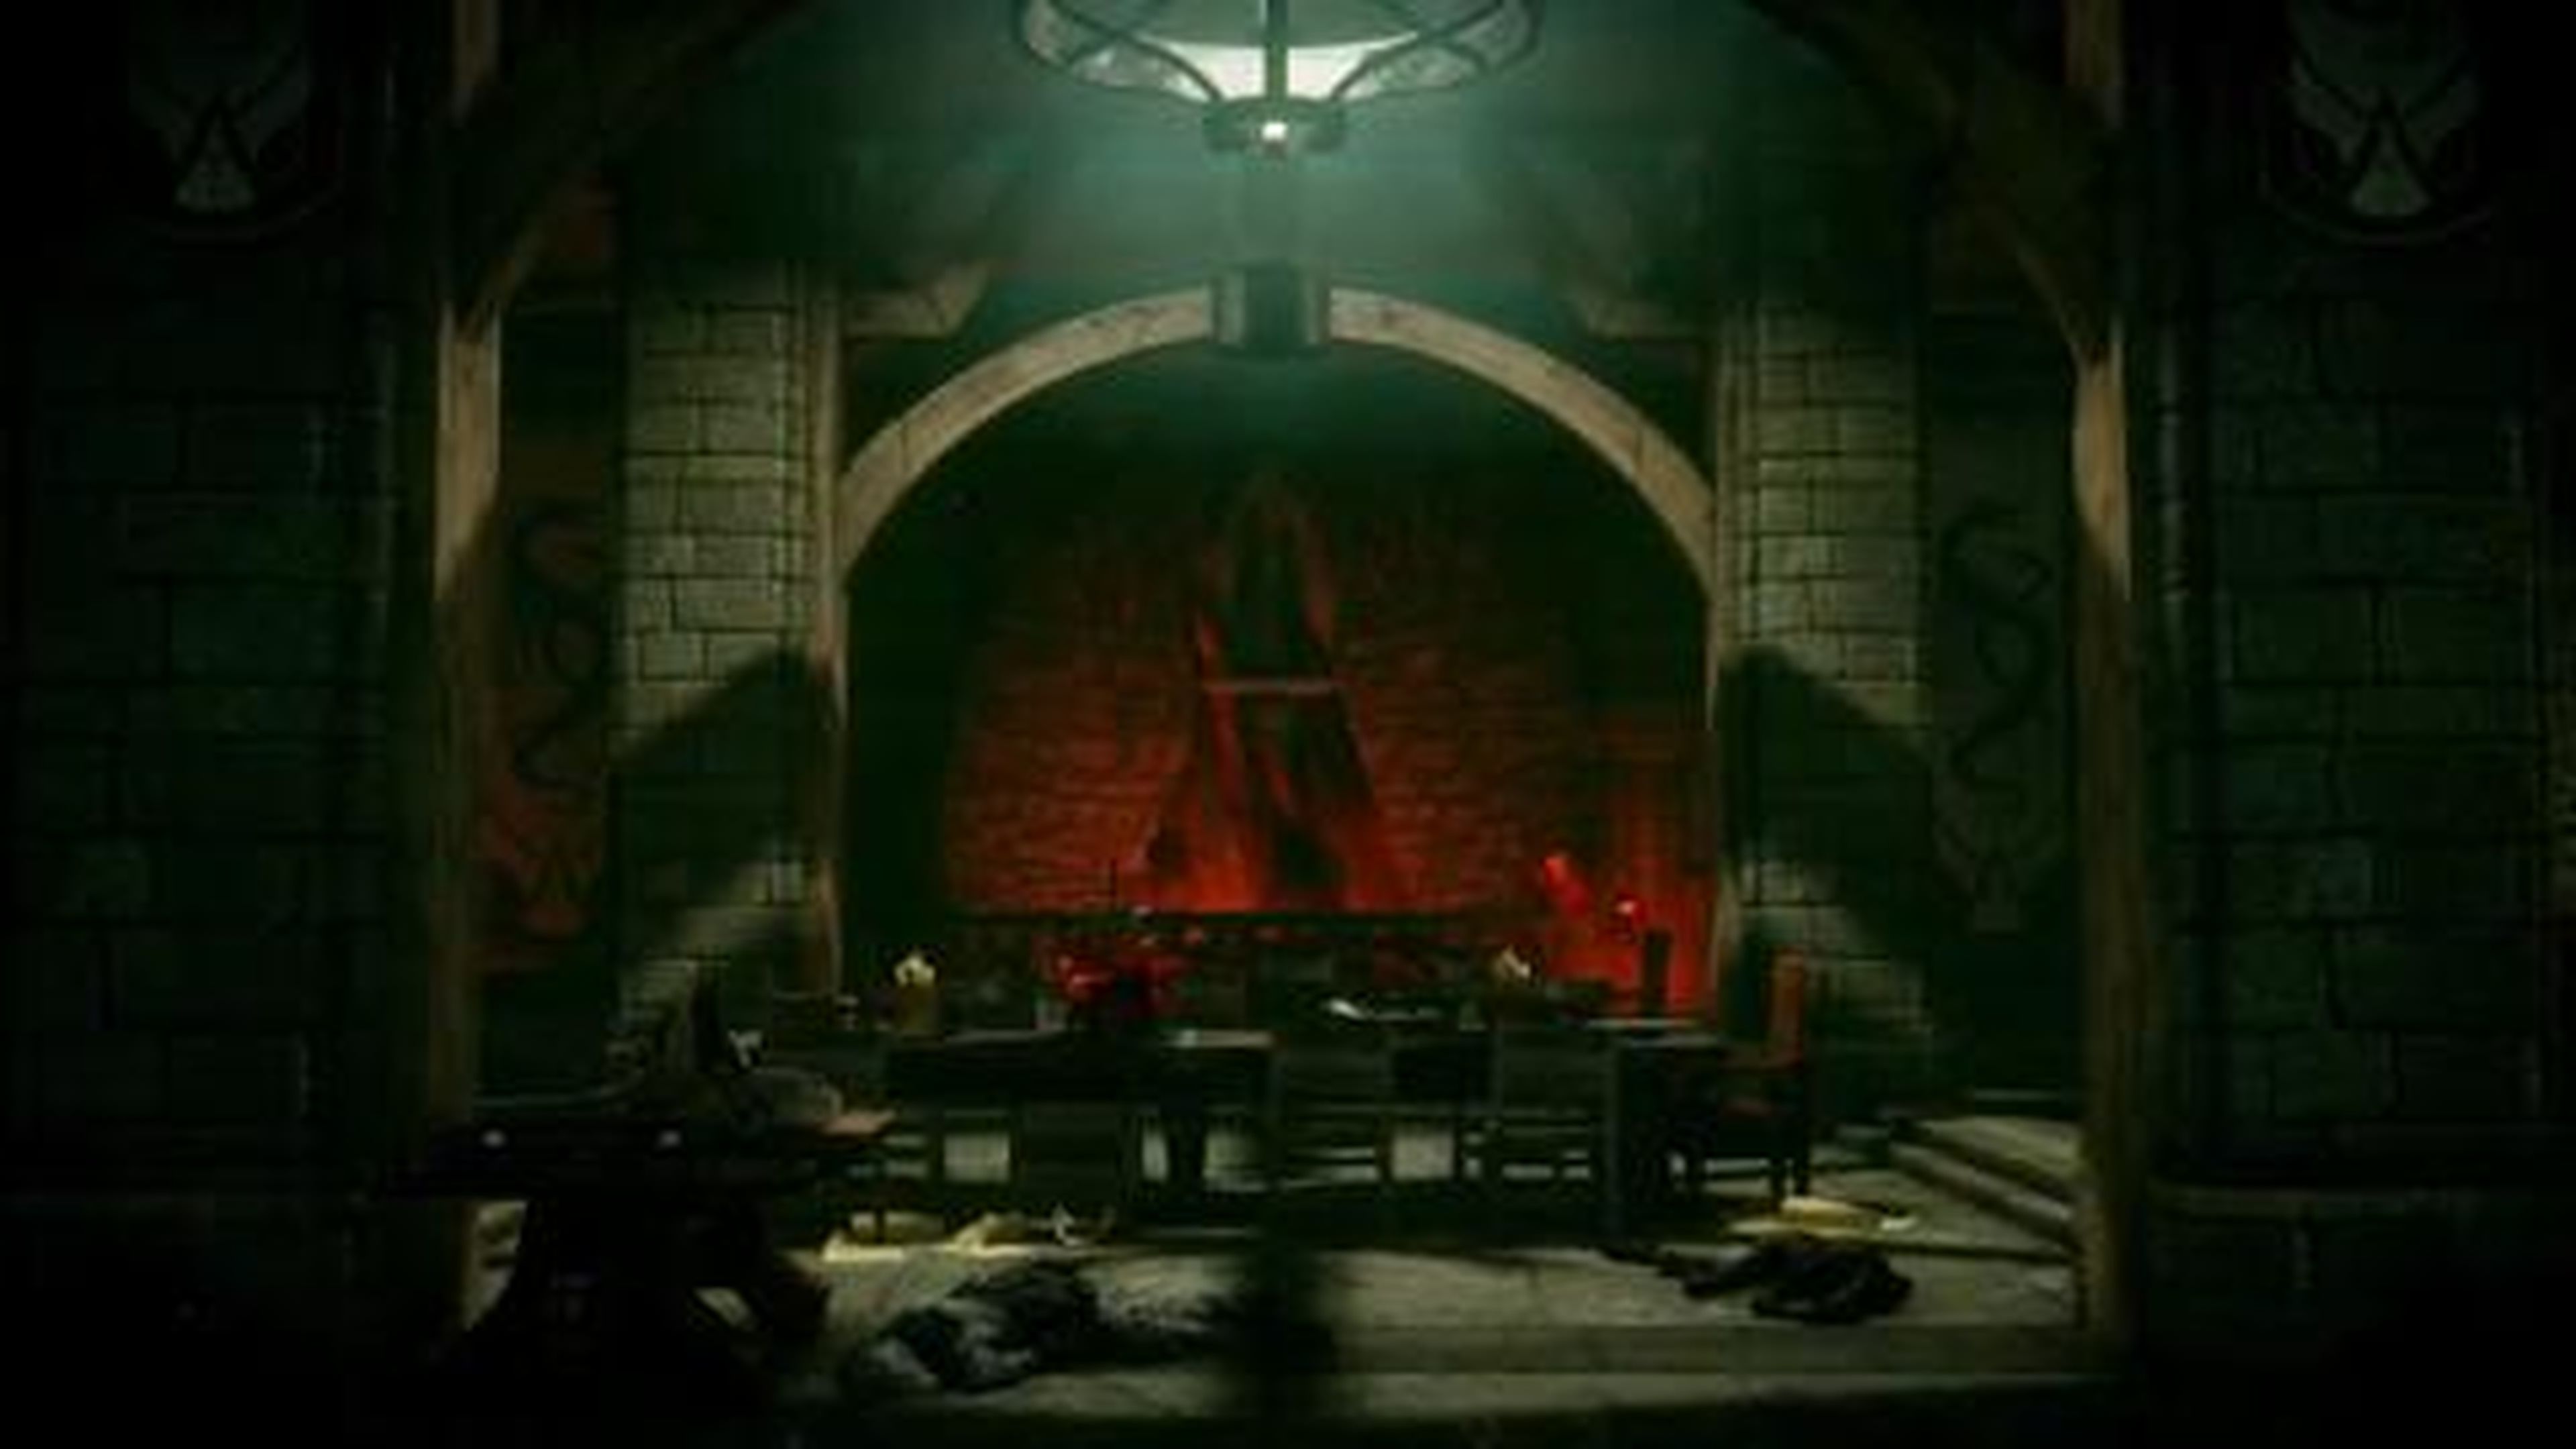 El mundo de Dragon Age Inquisition en vídeo en HobbyConsolas.com